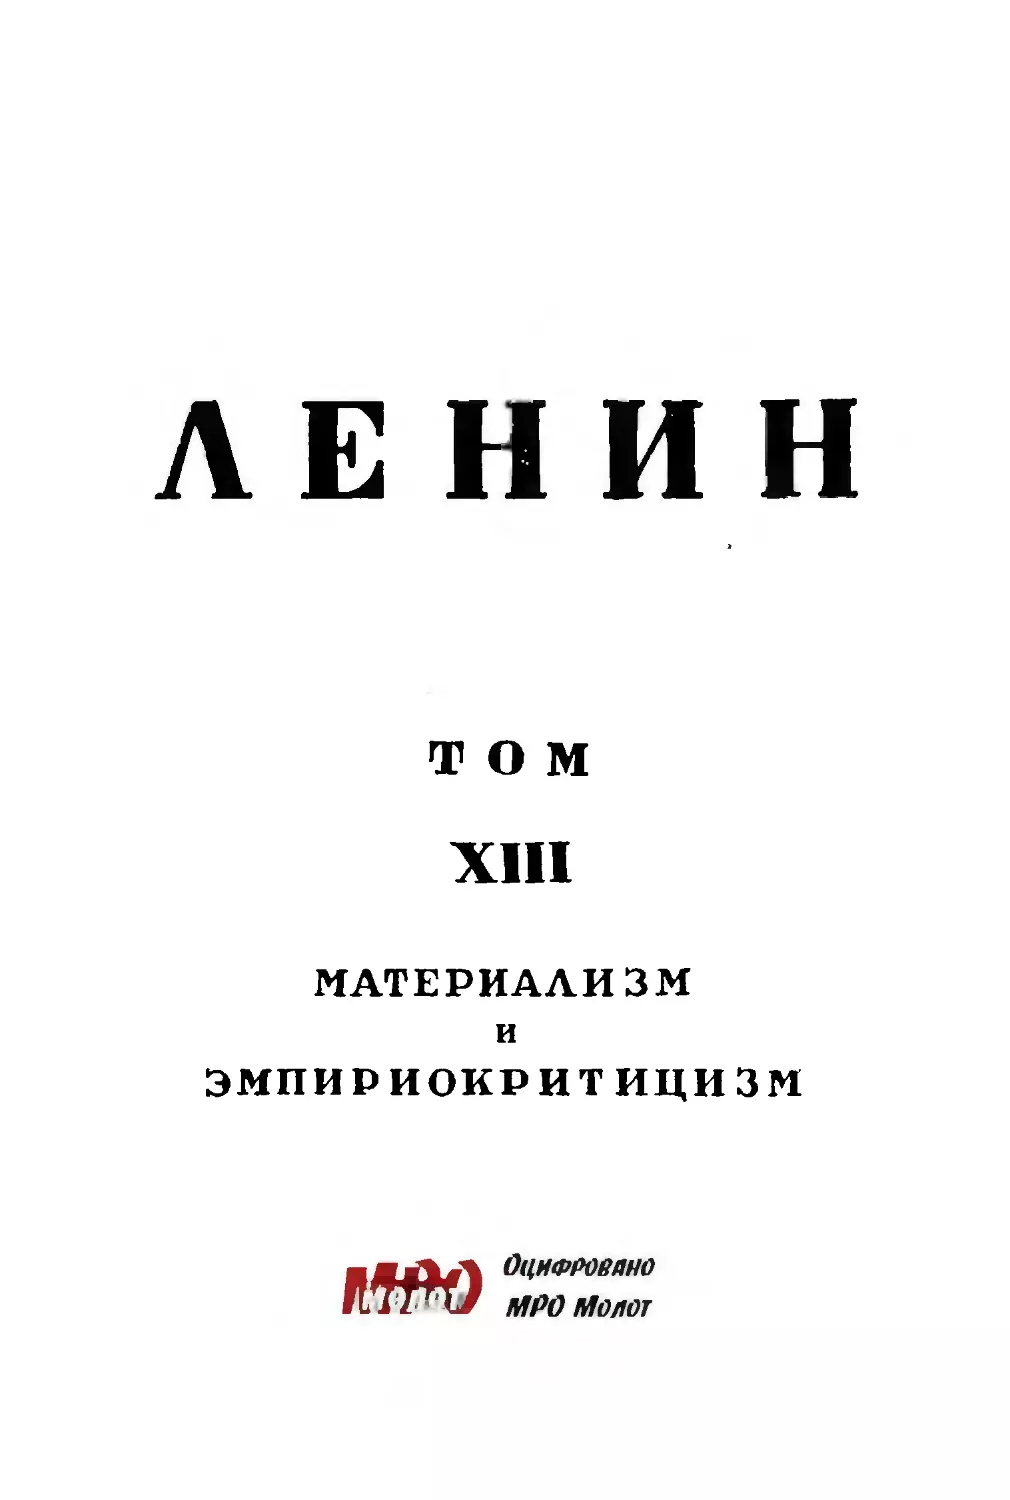 Тит.лист тома